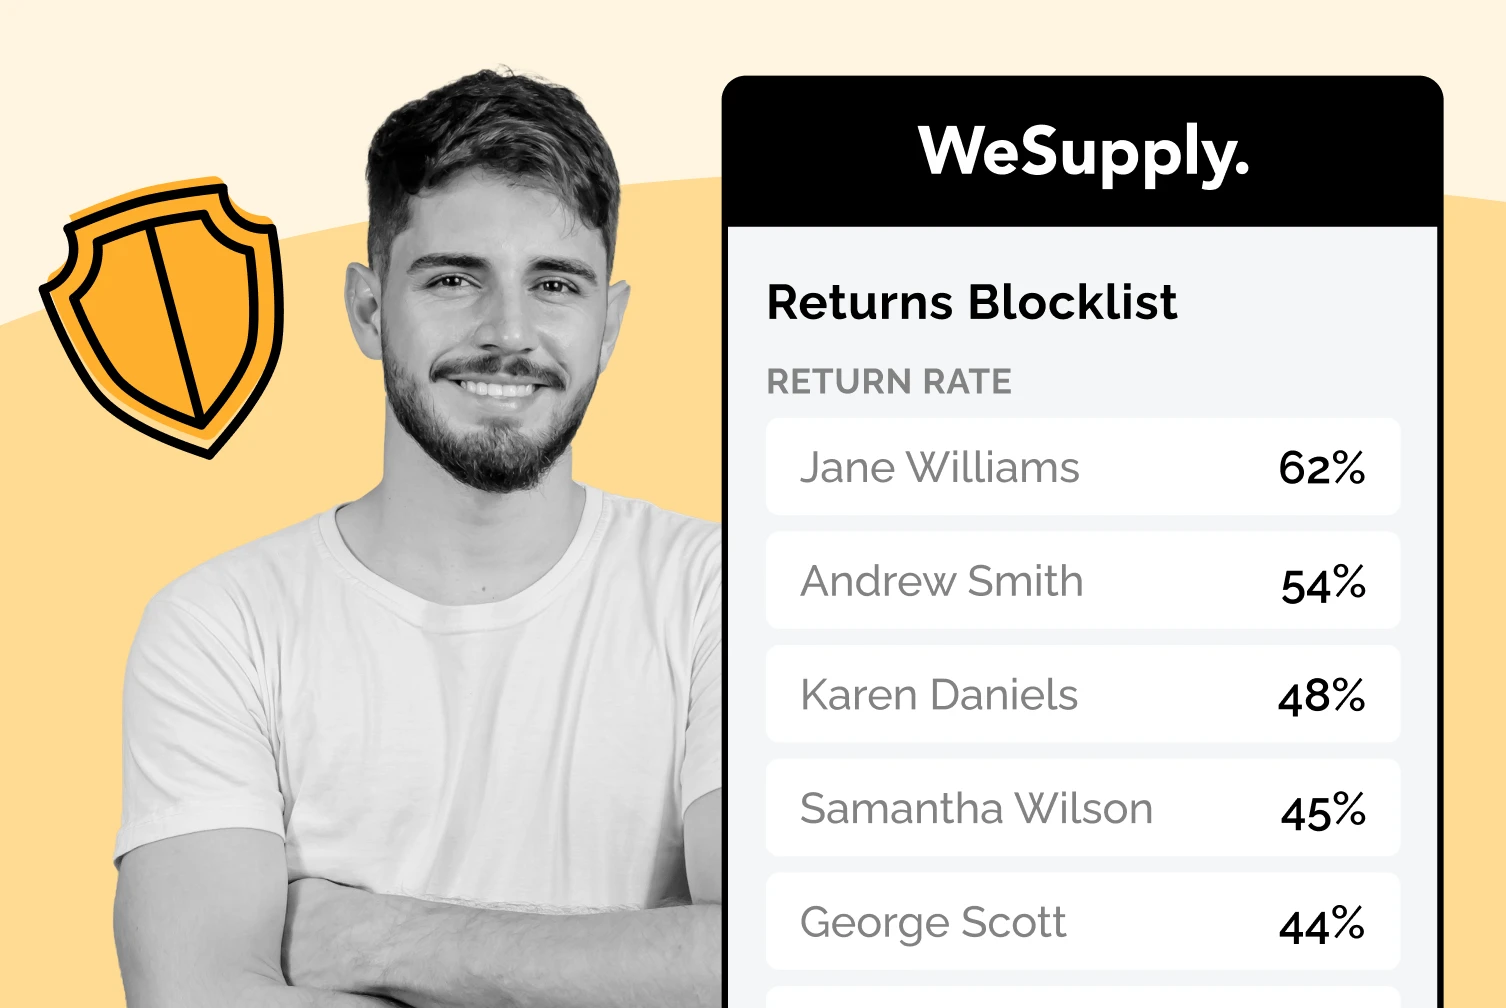 WeSupply Blocklist